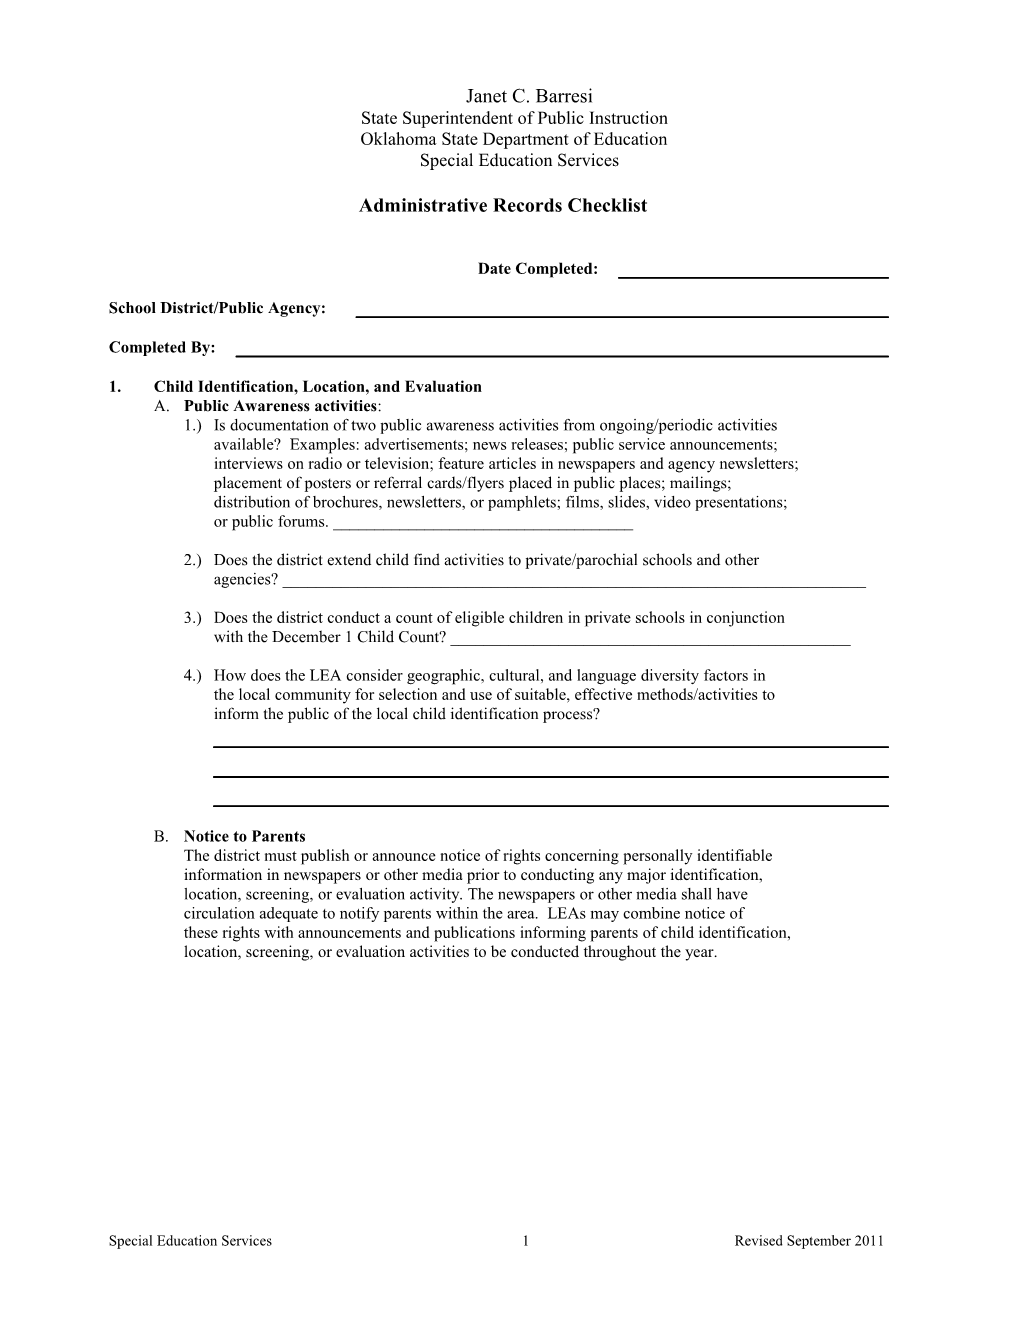 Administrative Records Checklist